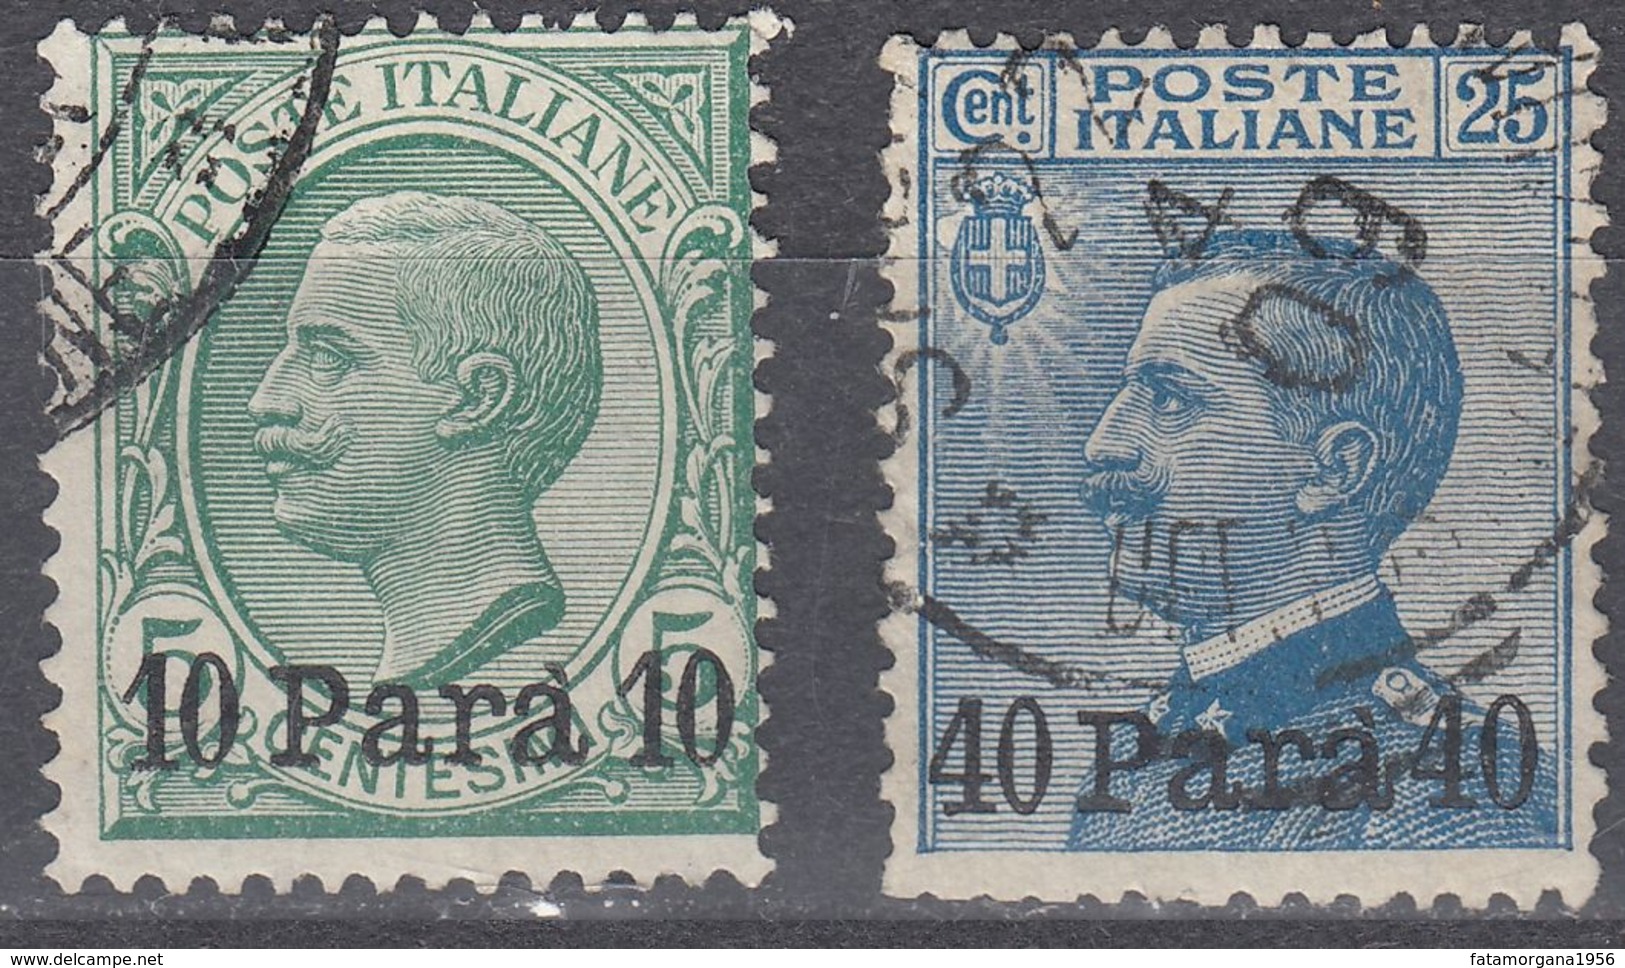 LEVANTE UFFICIO ITALIANO IN ALBANIA - 1902 - Lotto Di 2 Valori Usati: Yvert 21 E 23, Come Da Immagine. - Albania